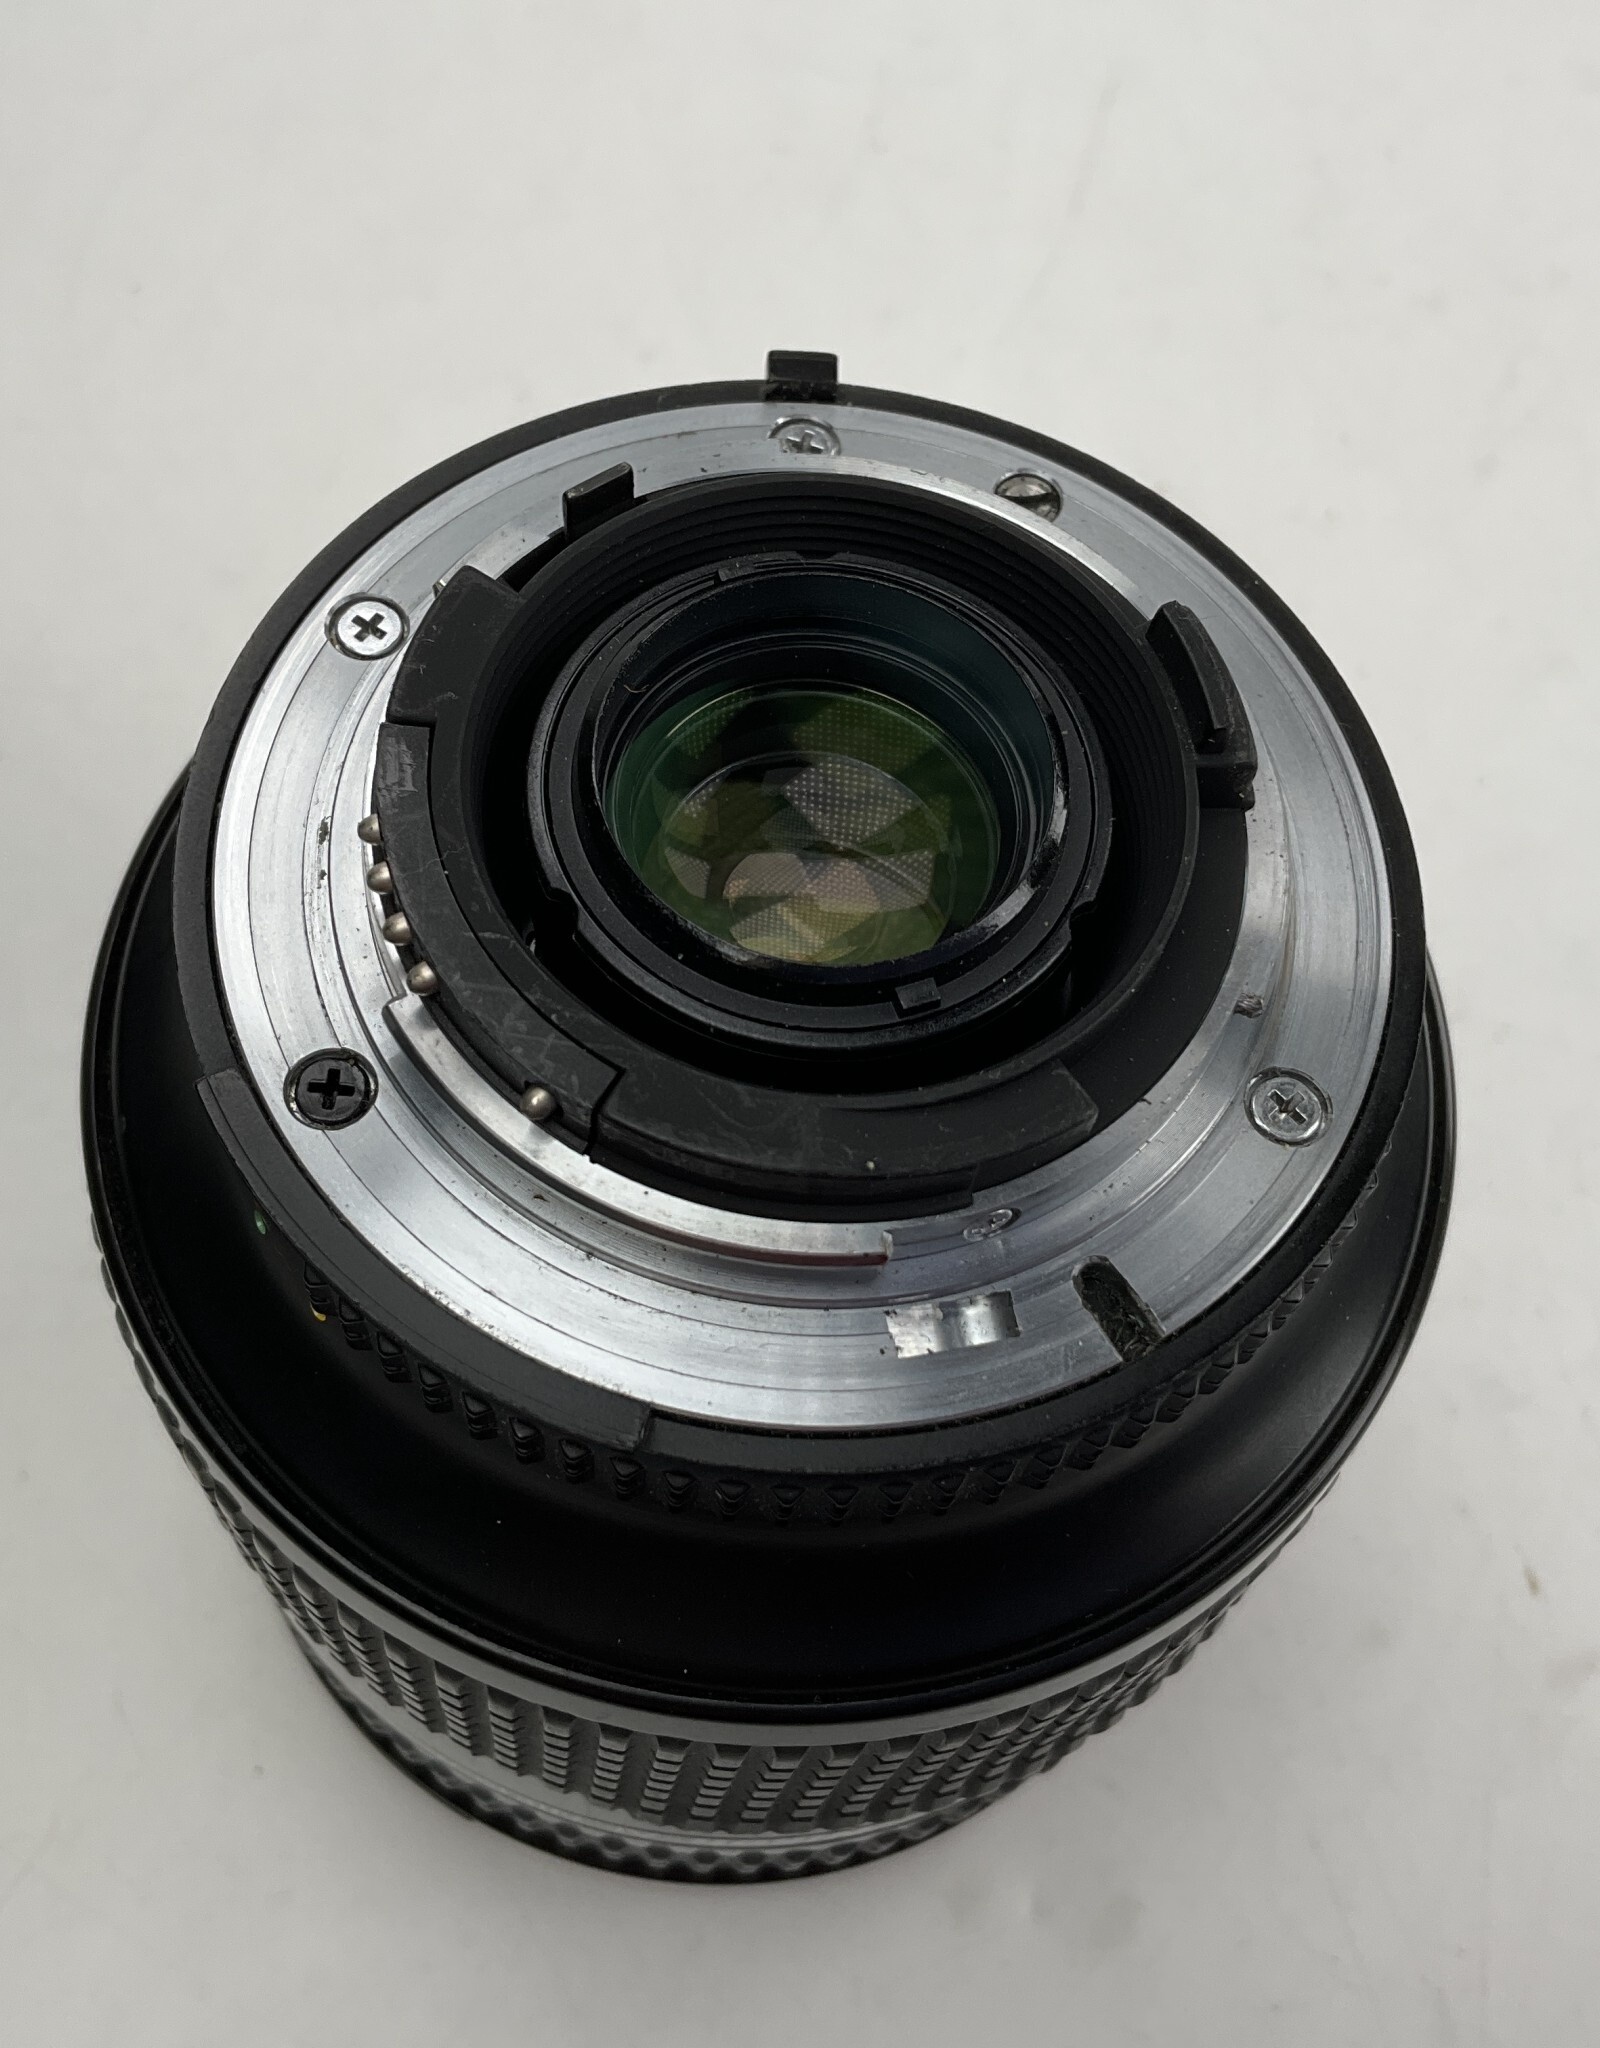 NIKON Nikon AF Nikkor 28-200mm f3.5-5.6D Lens used Good